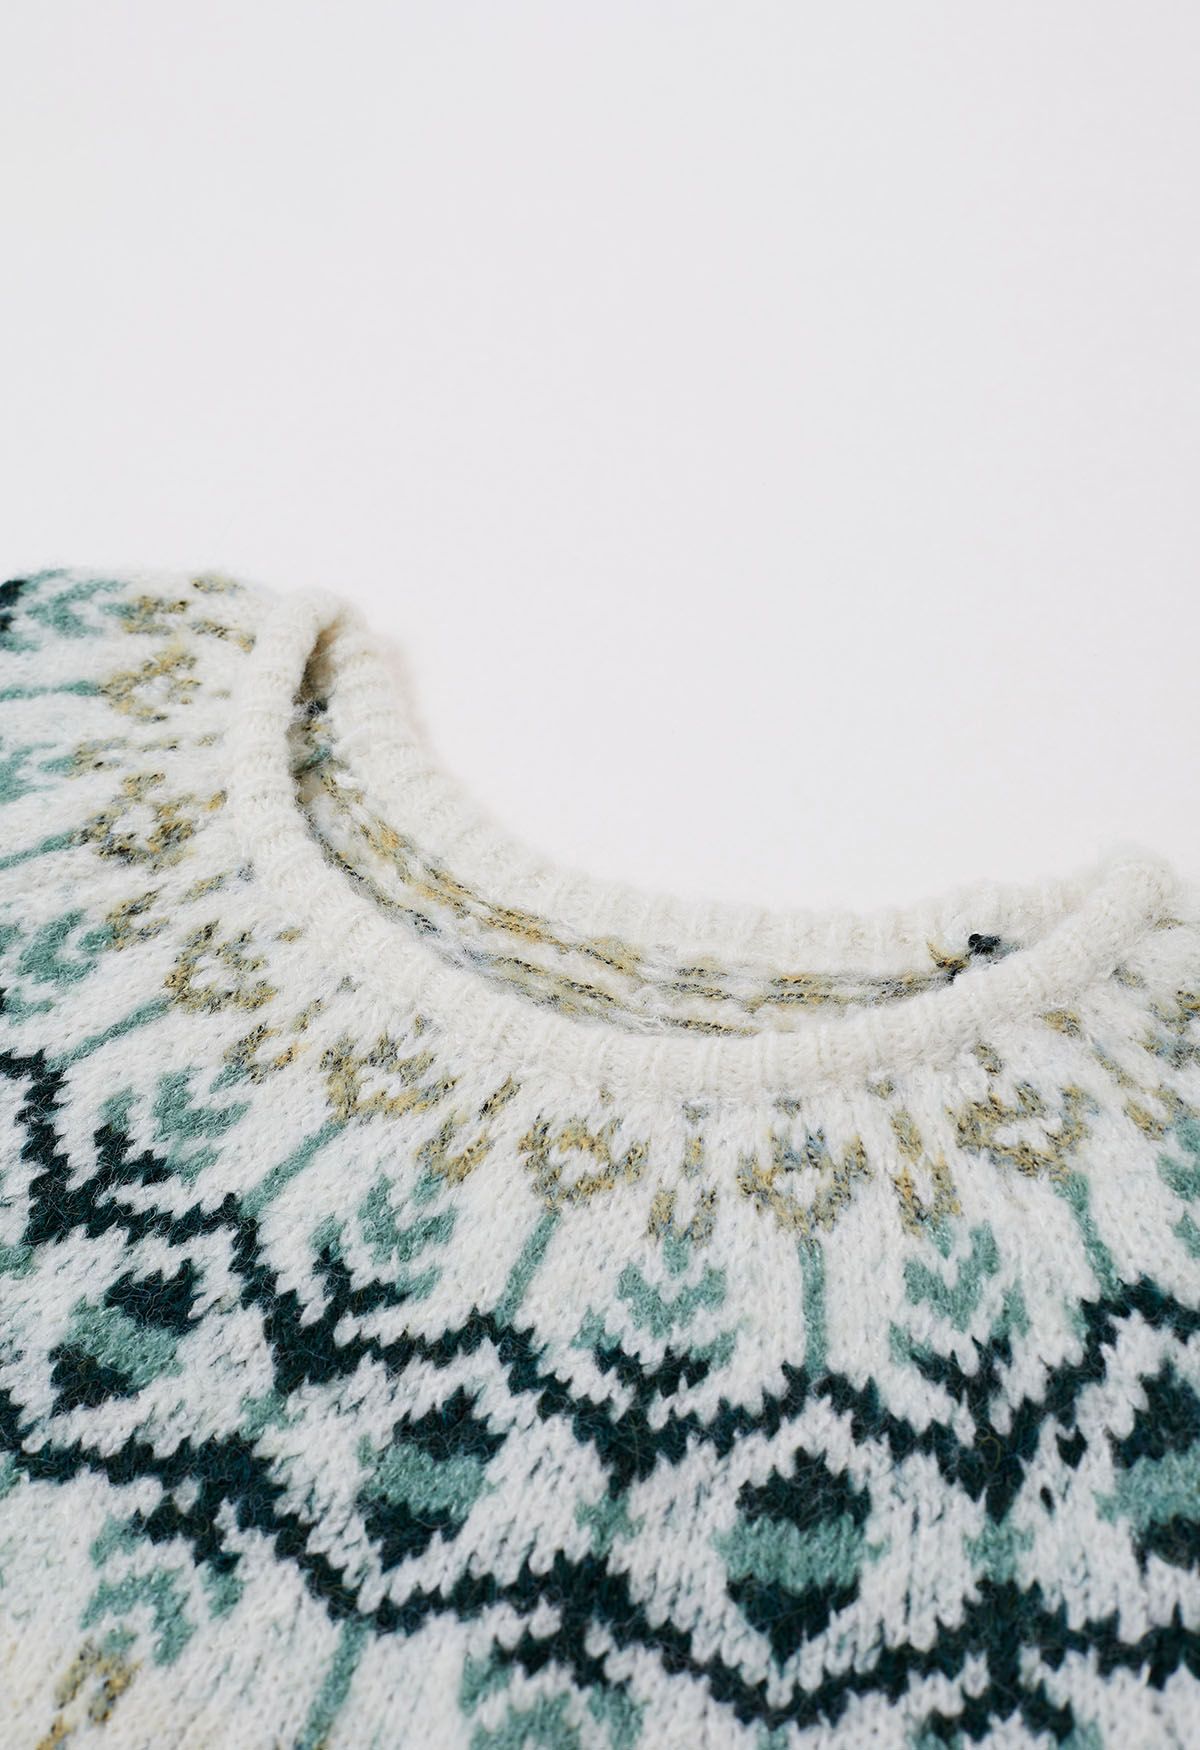 Newleaf Pattern Fuzzy Knit Sweater in Ivory